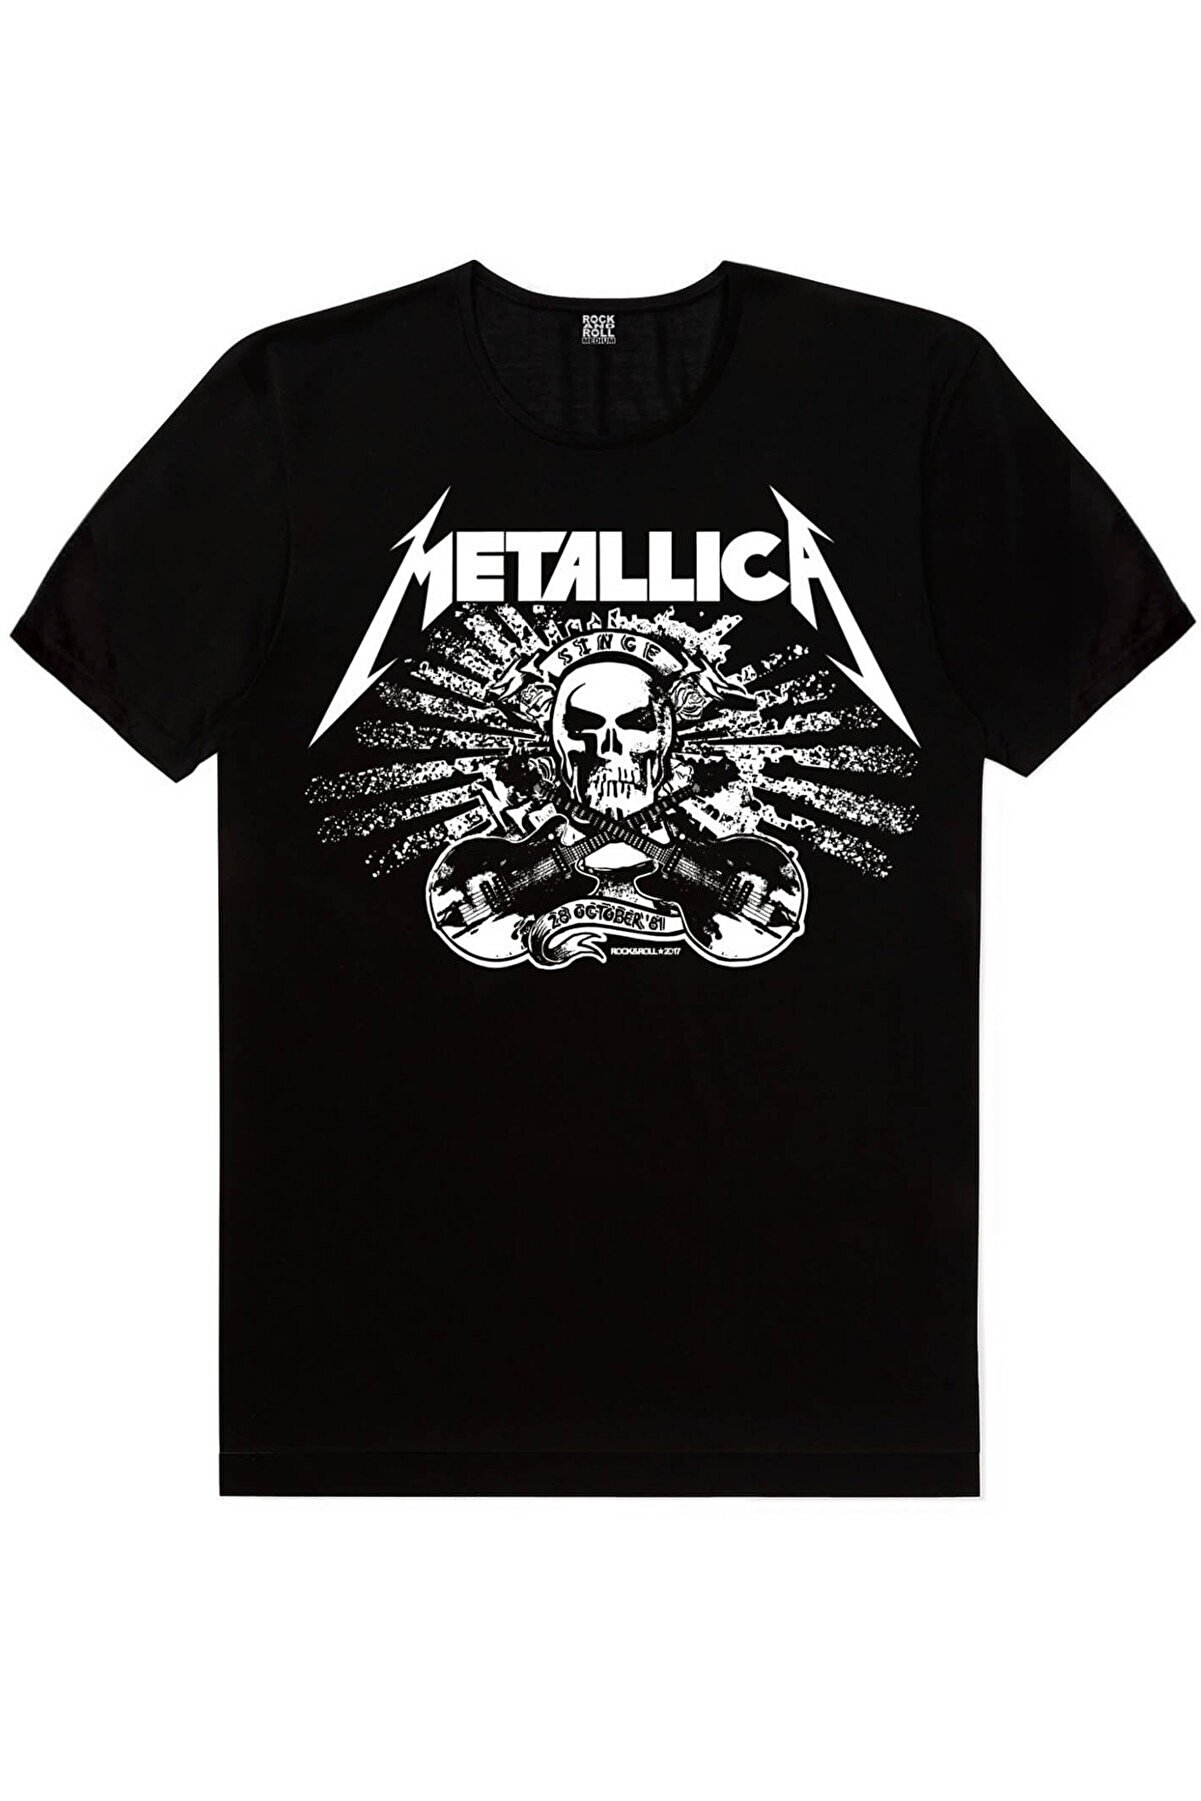 Geometrik Geyik, Metallica Kurukafa, Motorcu Kurukafa Kadın 3'lü Eko Paket T-shirt